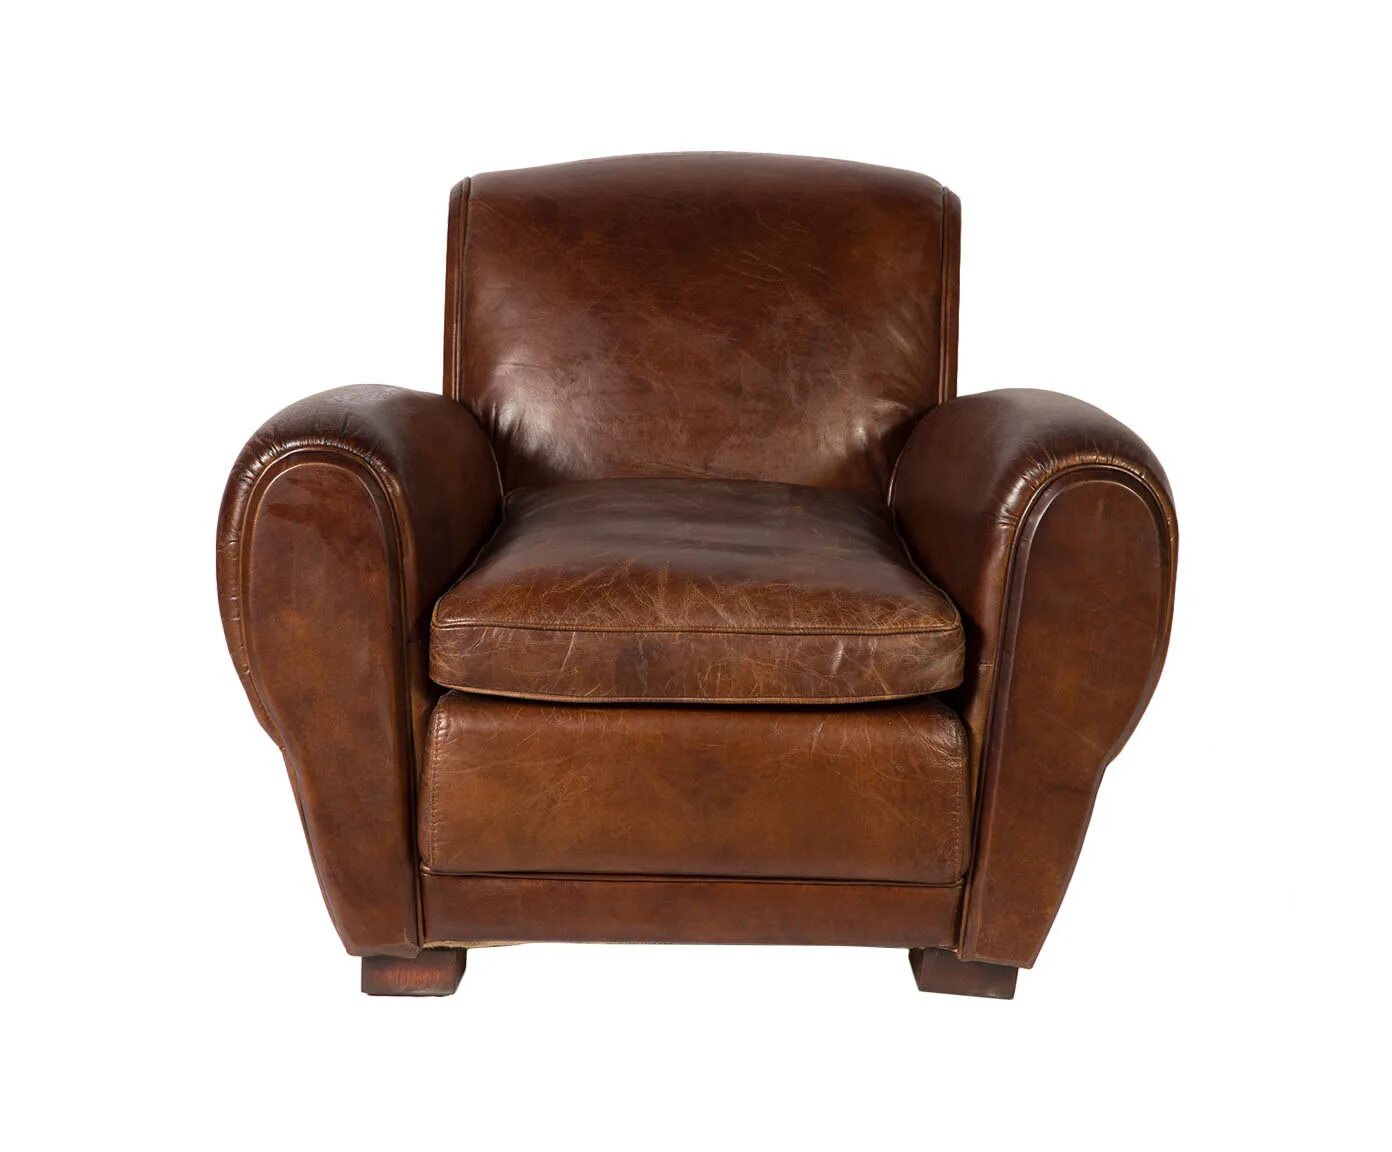 Высокое кожаное кресло. Кресло кожаное. Кресло натуральная кожа. Старое кожаное кресло. Огромное кожаное кресло.